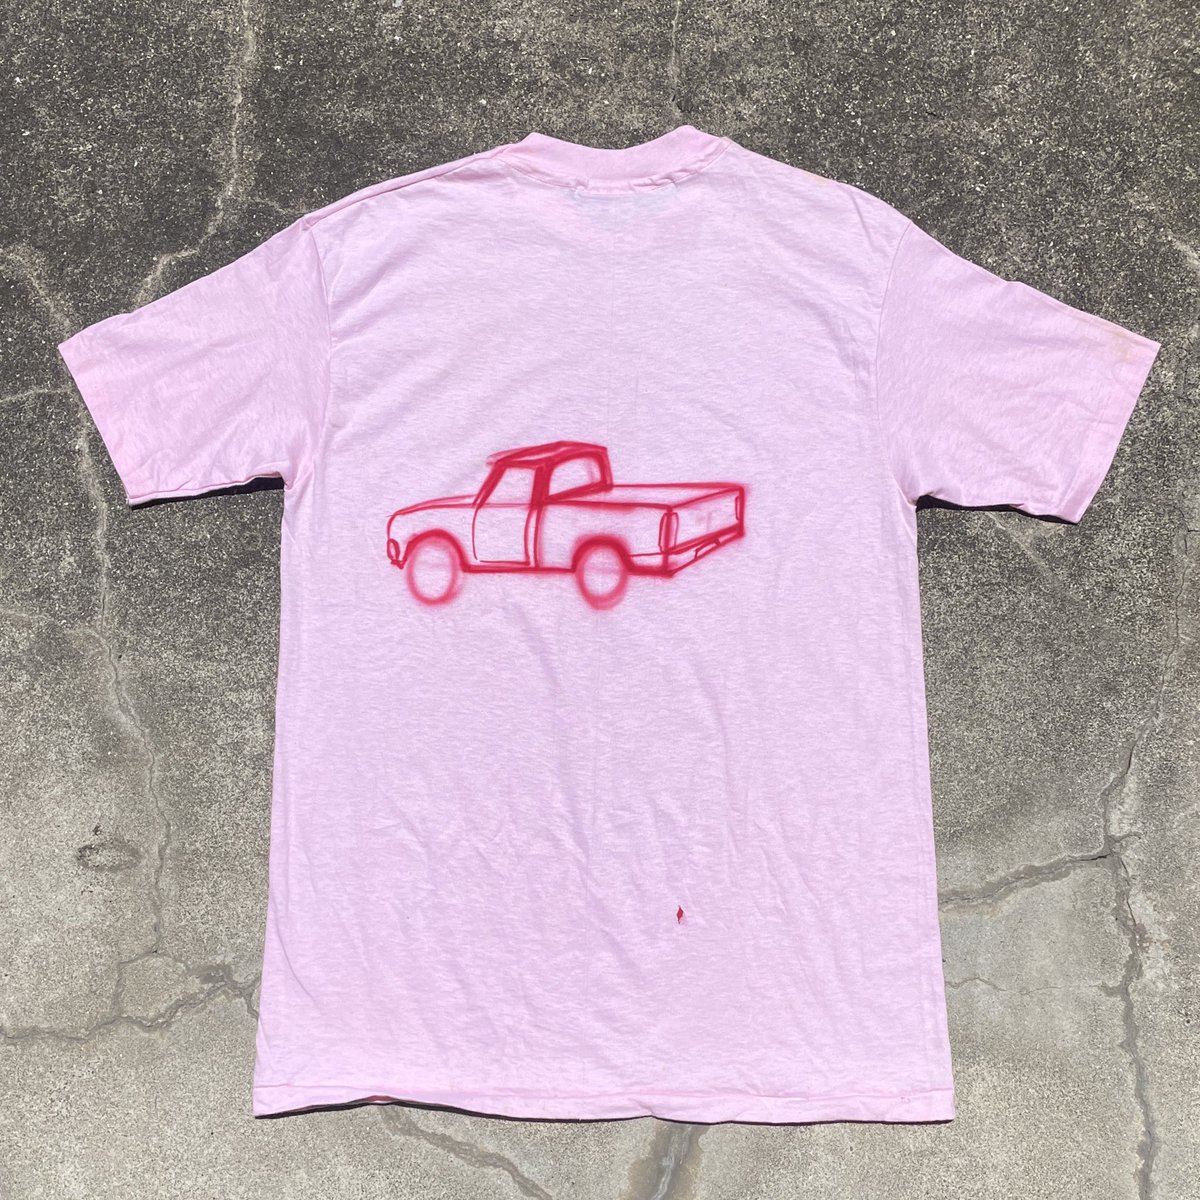 80s Hanes BEEFY-T
“Graffiti of Pickup Truck” T-Shirt

これは相当可愛らしい。無地のTシャツ、その背中にピックアップトラックの絵（スプレーで描いたのかな）をあしらってる。タイヤがぼやけていて素敵。想像よりもシルエットが縦長だったから、裾をタックインして着たい。